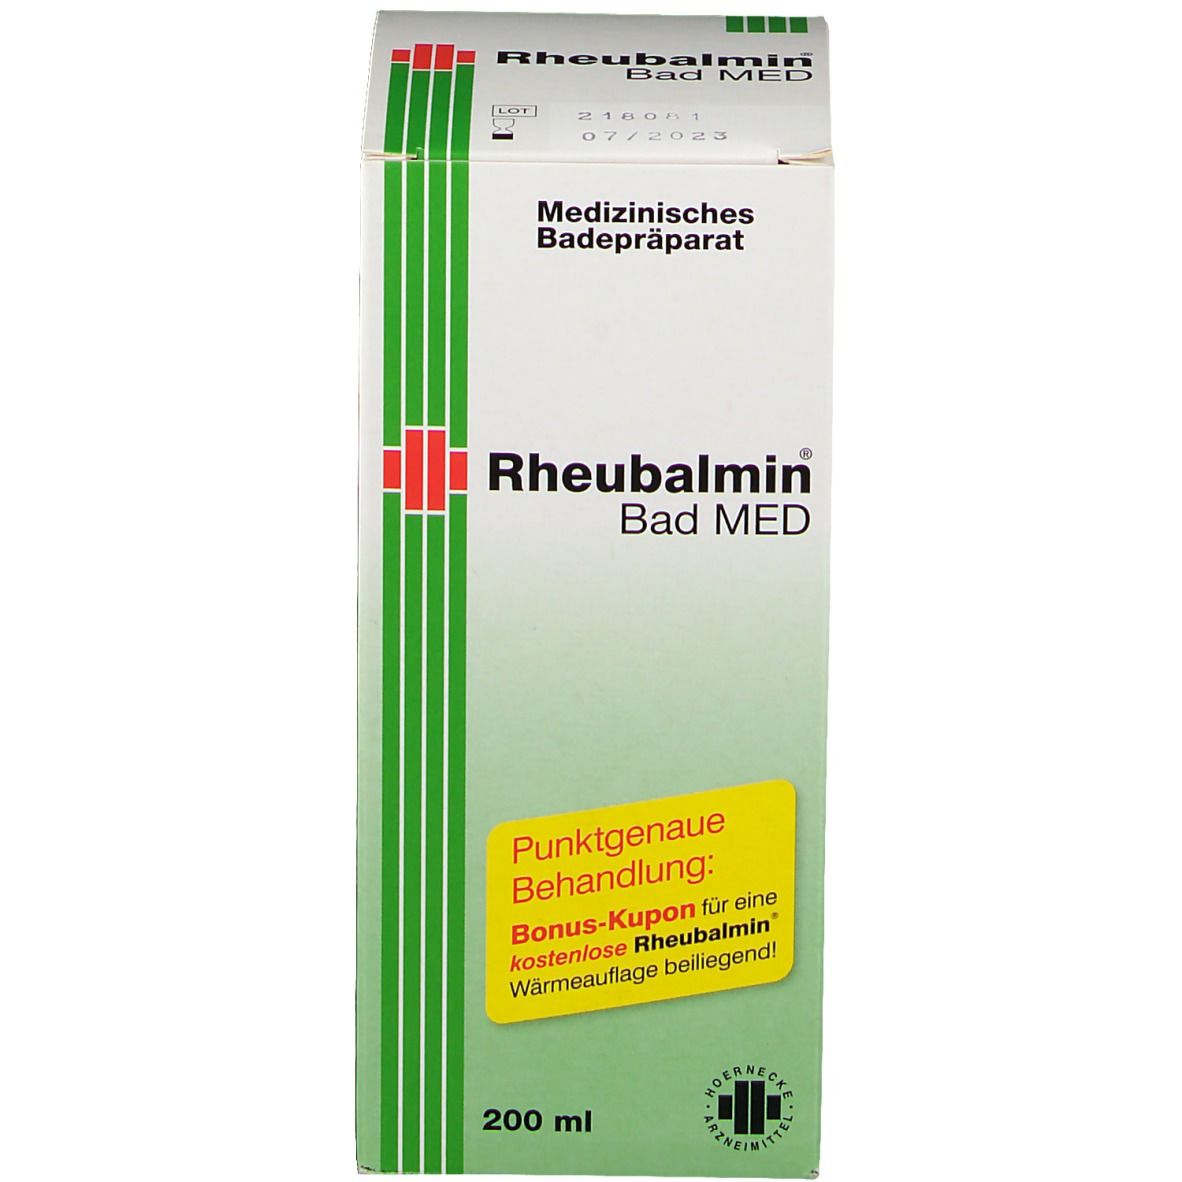 Rheubalmin® Bad MED